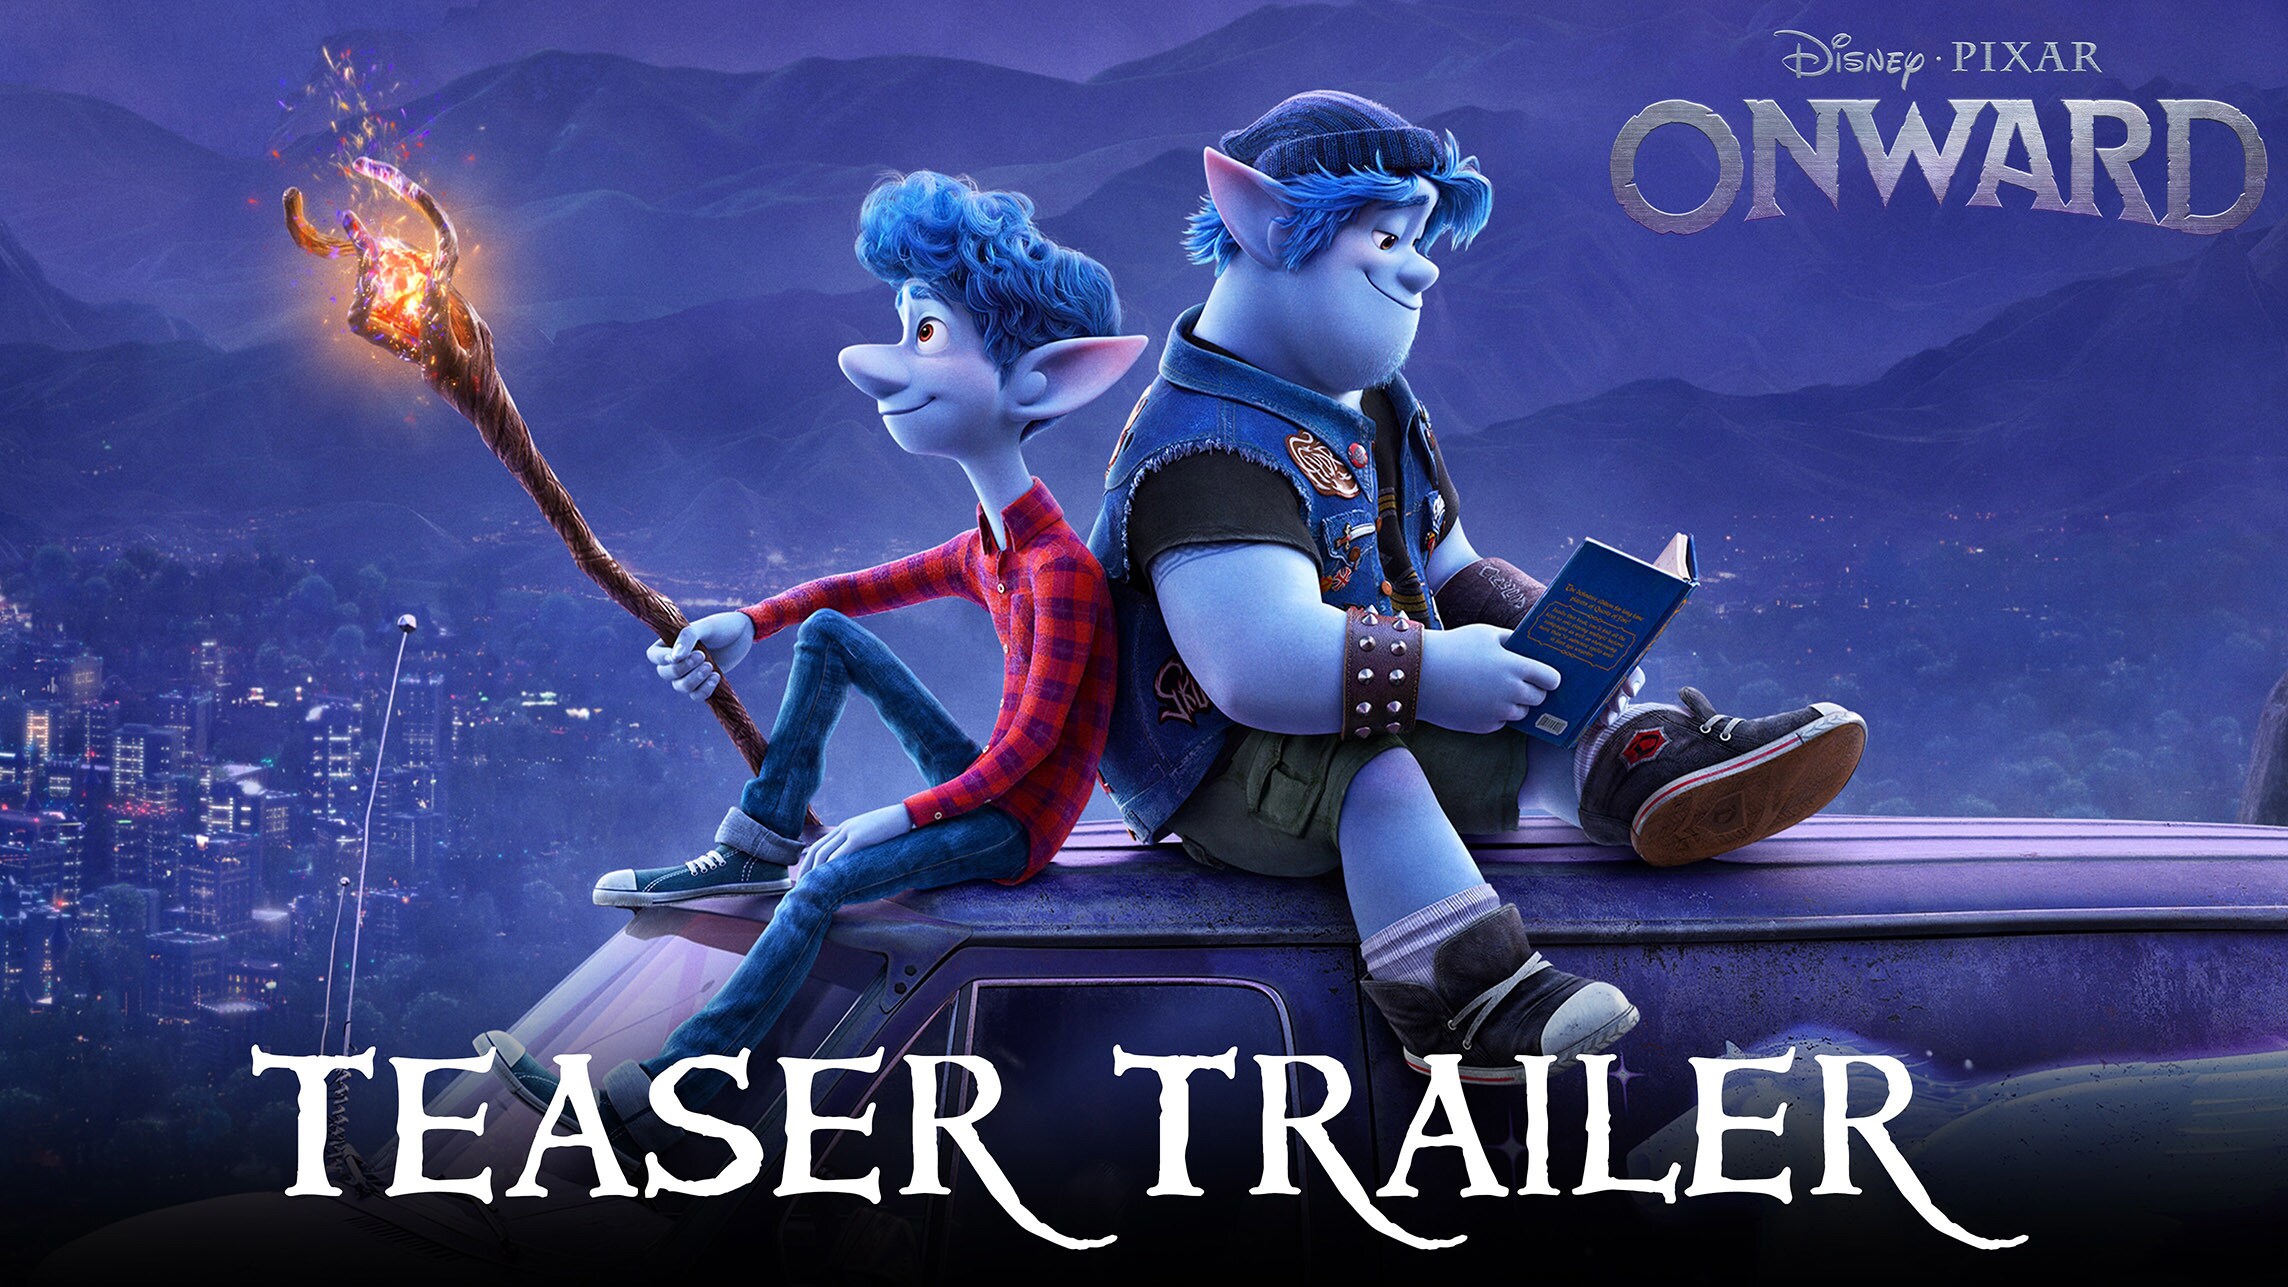 Disney and Pixar's Onward Teaser Trailer